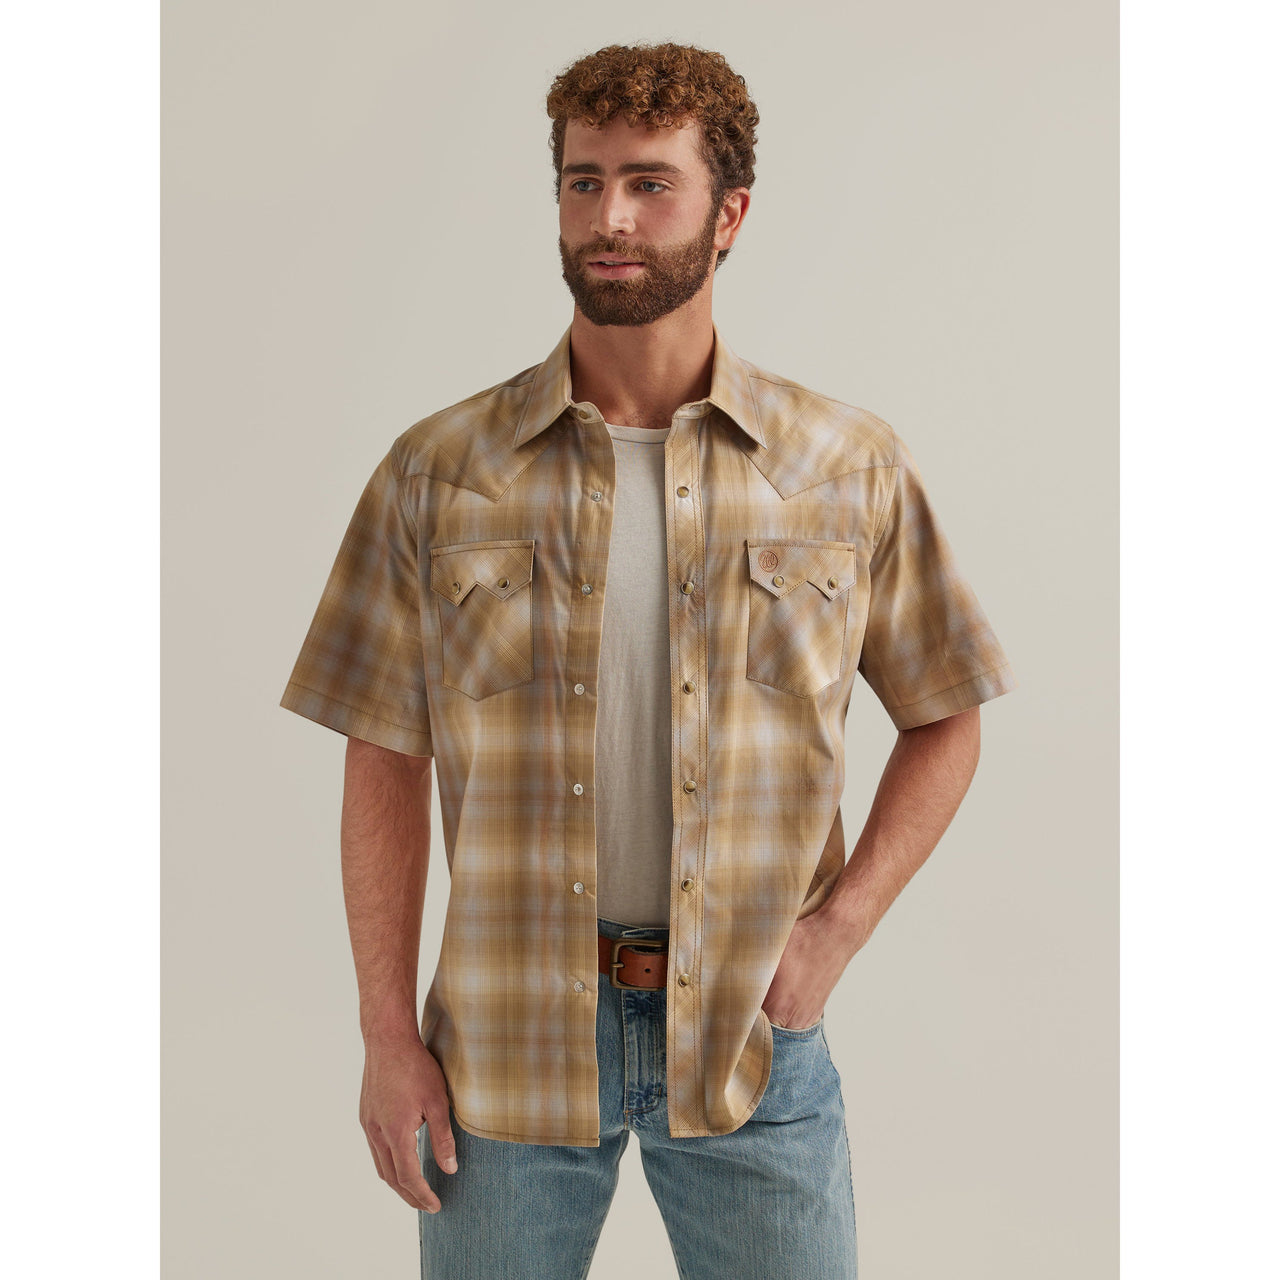 Wrangler Men's Retro Modern Fit Short Sleeve Plaid Shirt - Sand